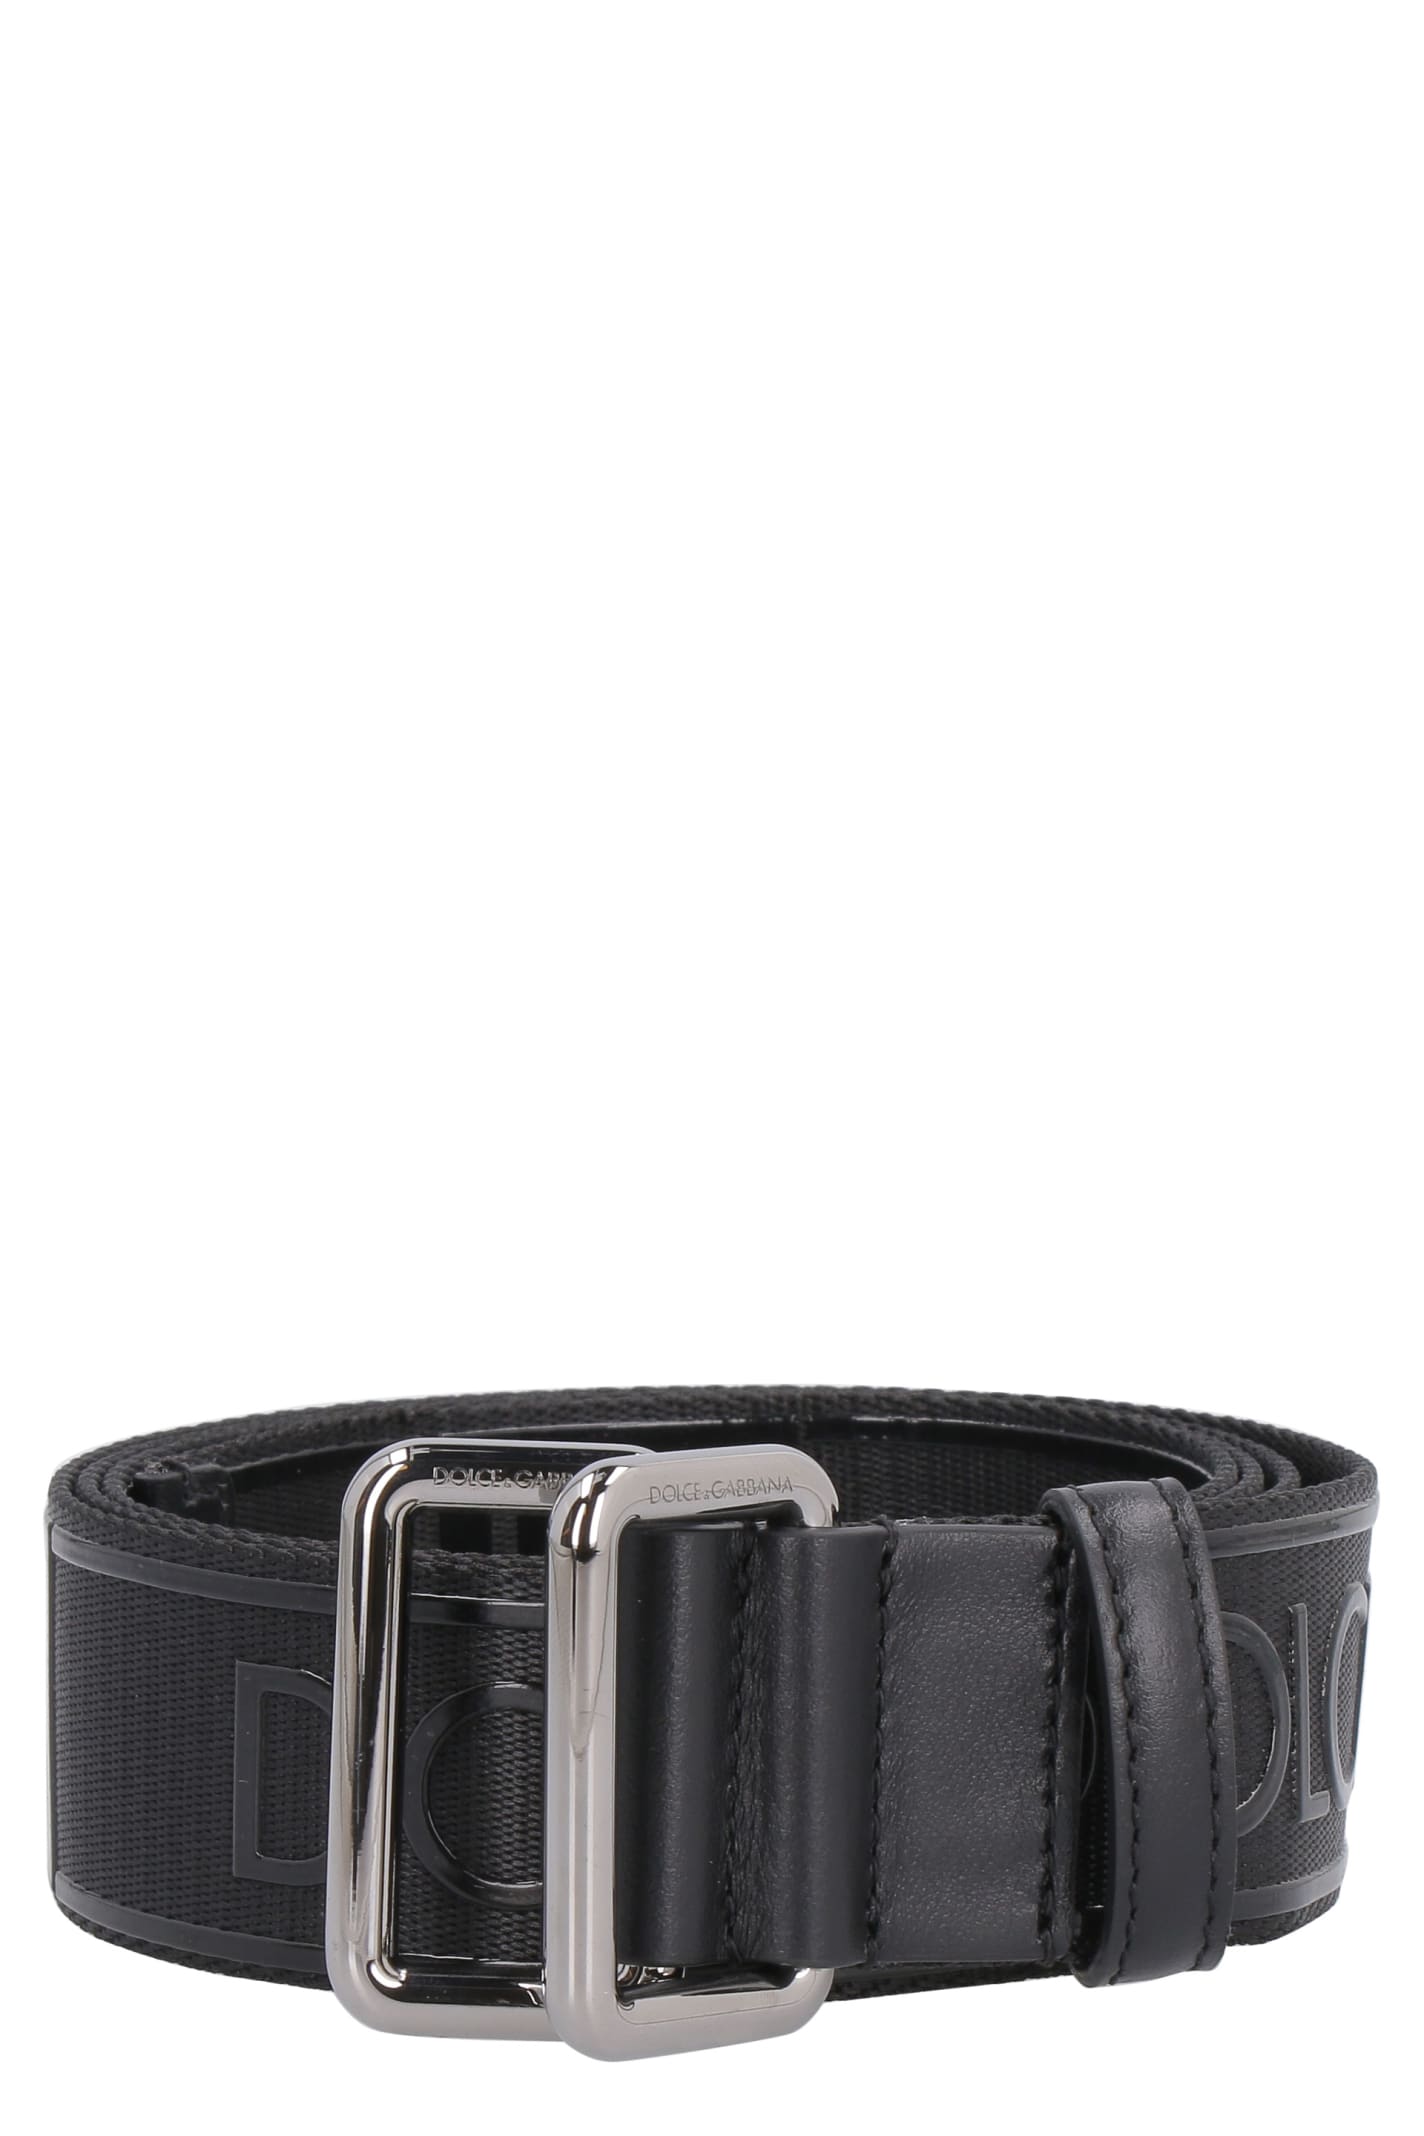 Dolce & Gabbana Adjustable Logoed Belt